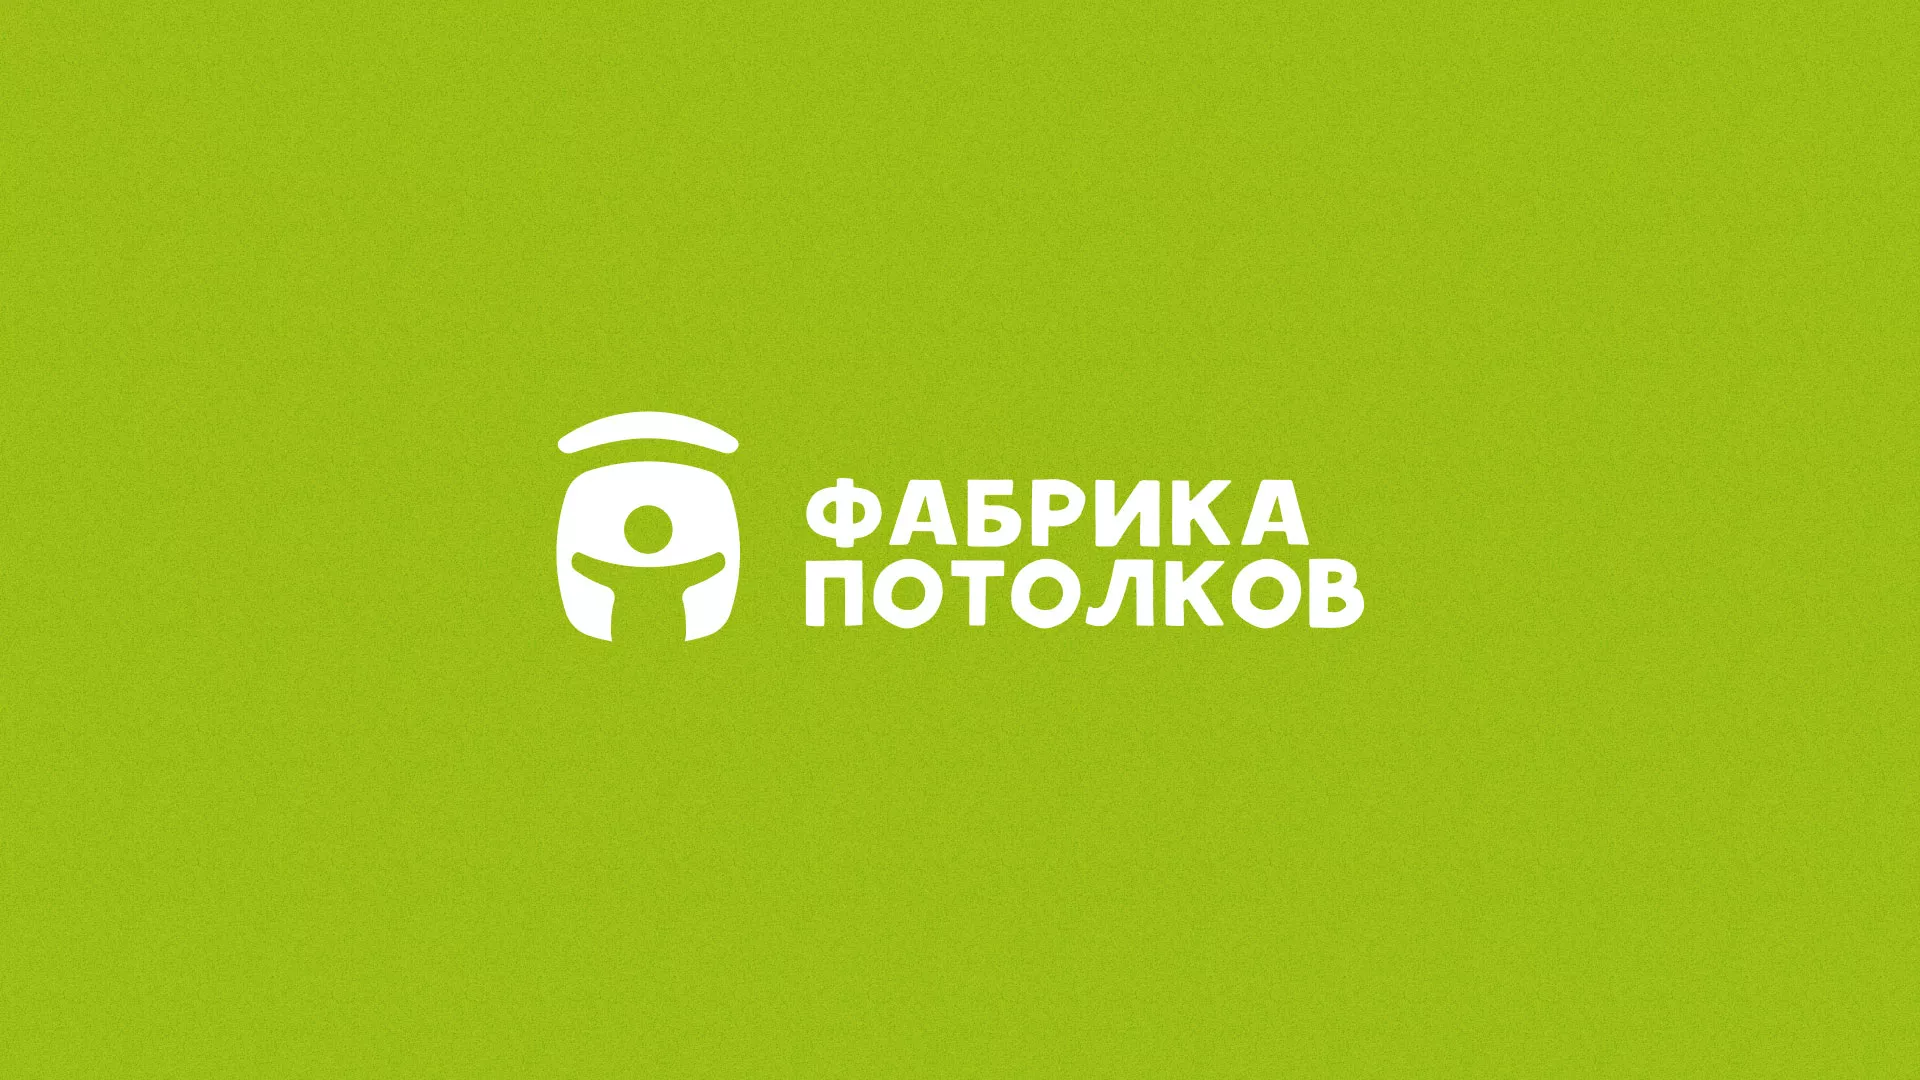 Разработка логотипа для производства натяжных потолков в Смоленске